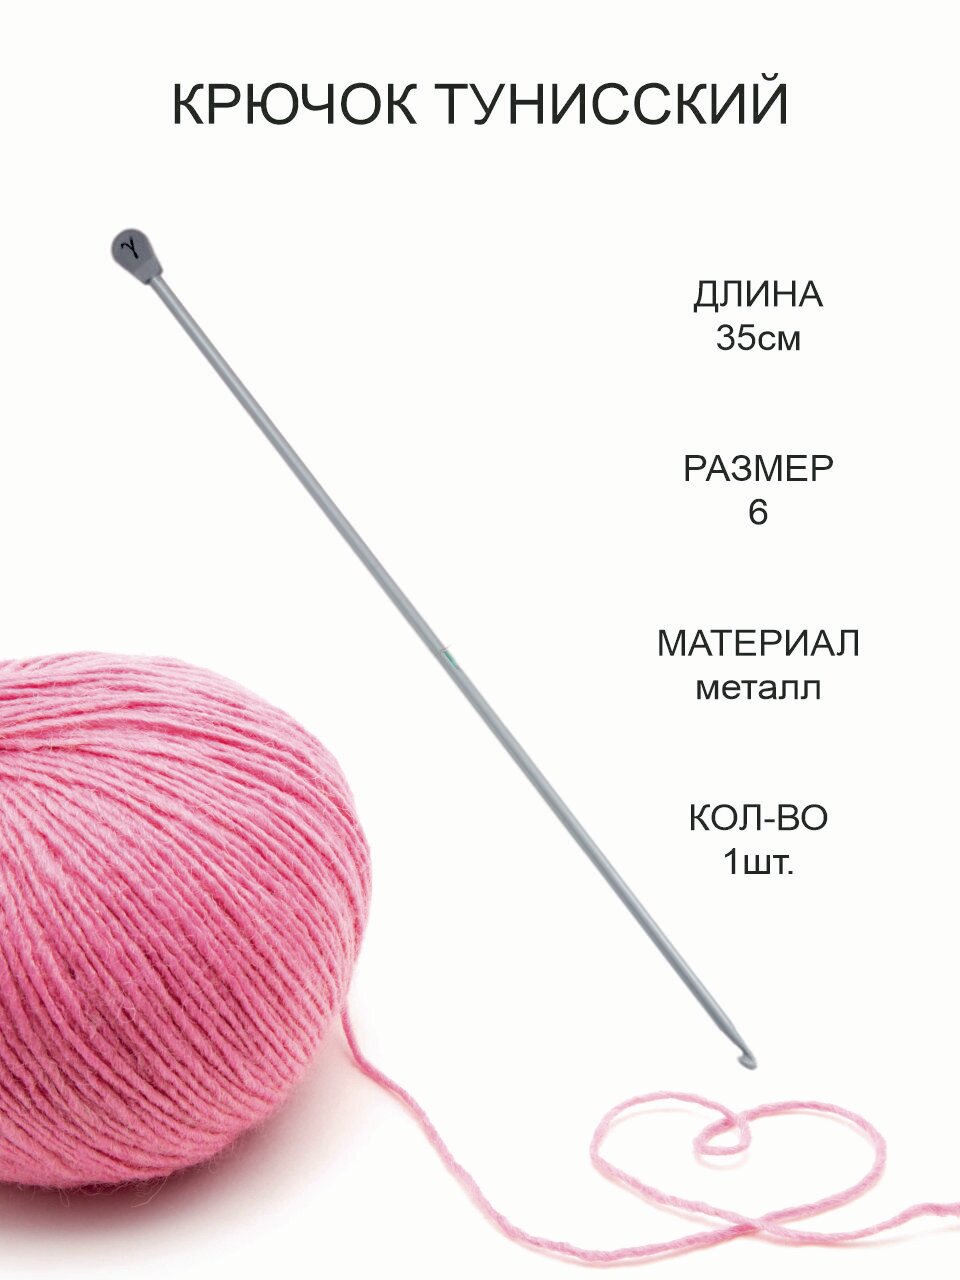 Крючок для тунисского вязания, металл, диаметр 6 мм, длина 35 см / Крючок для вязания Афганский с тефлоновым покрытием